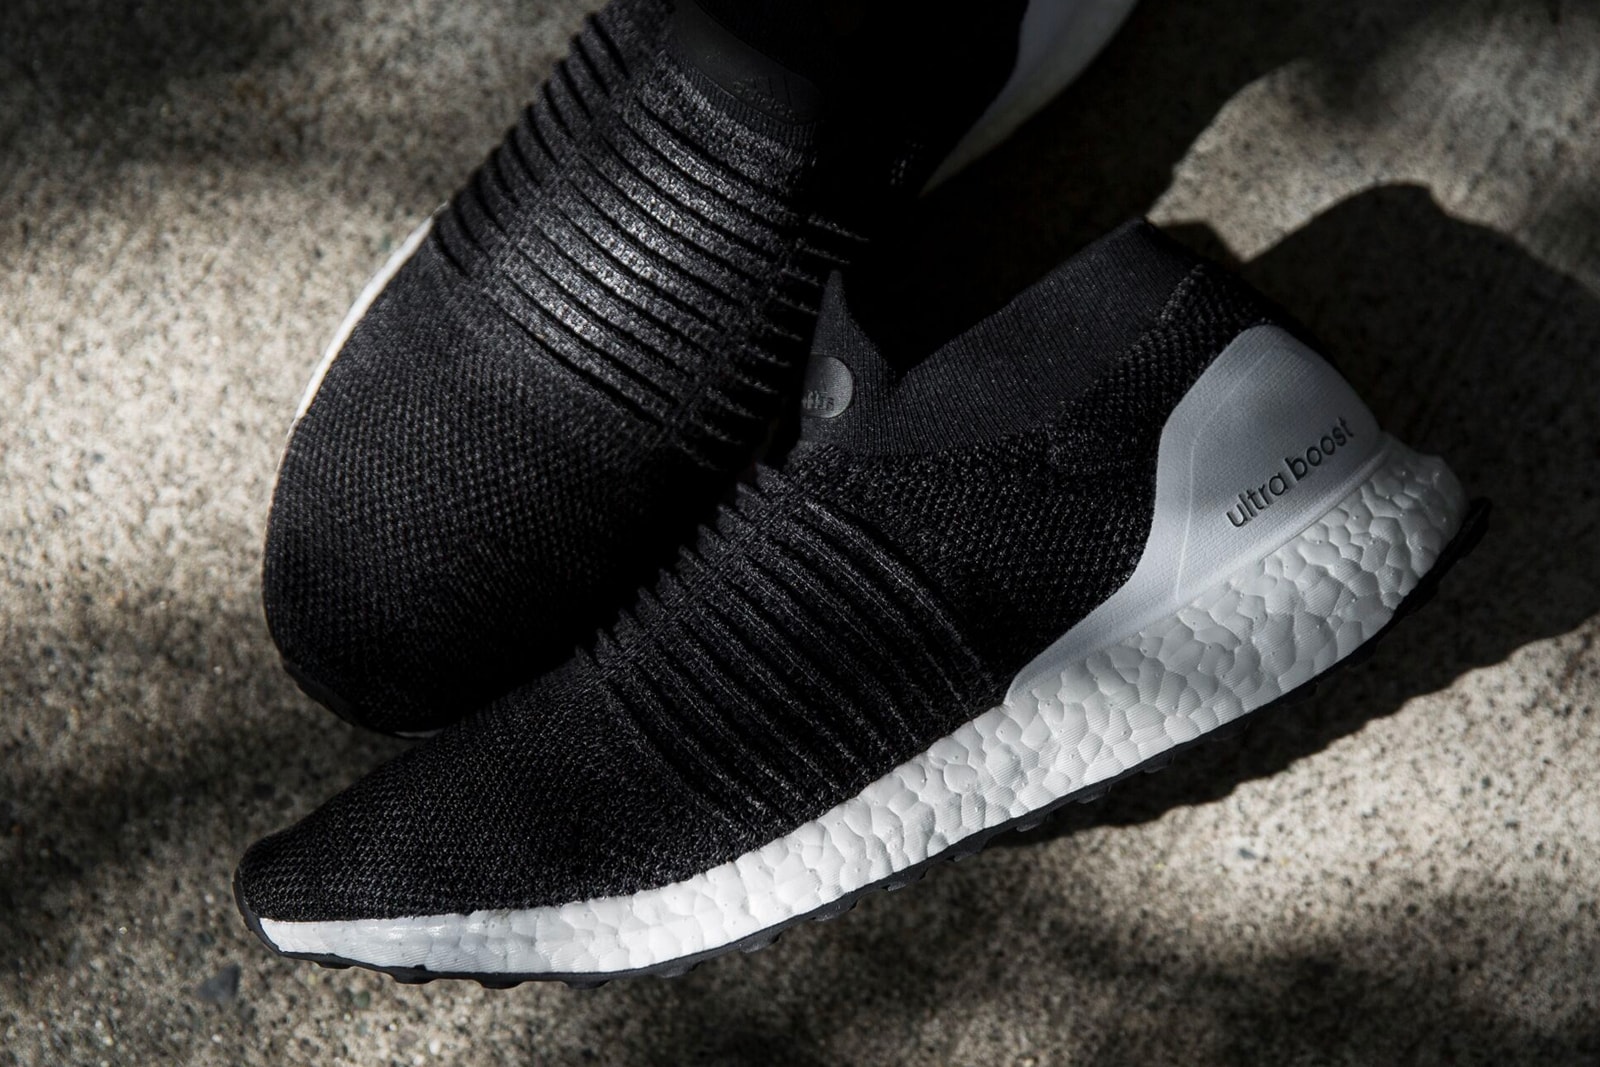 adidas UltraBOOST Laceless Core Black release date may 1 drop info footwear sneakers